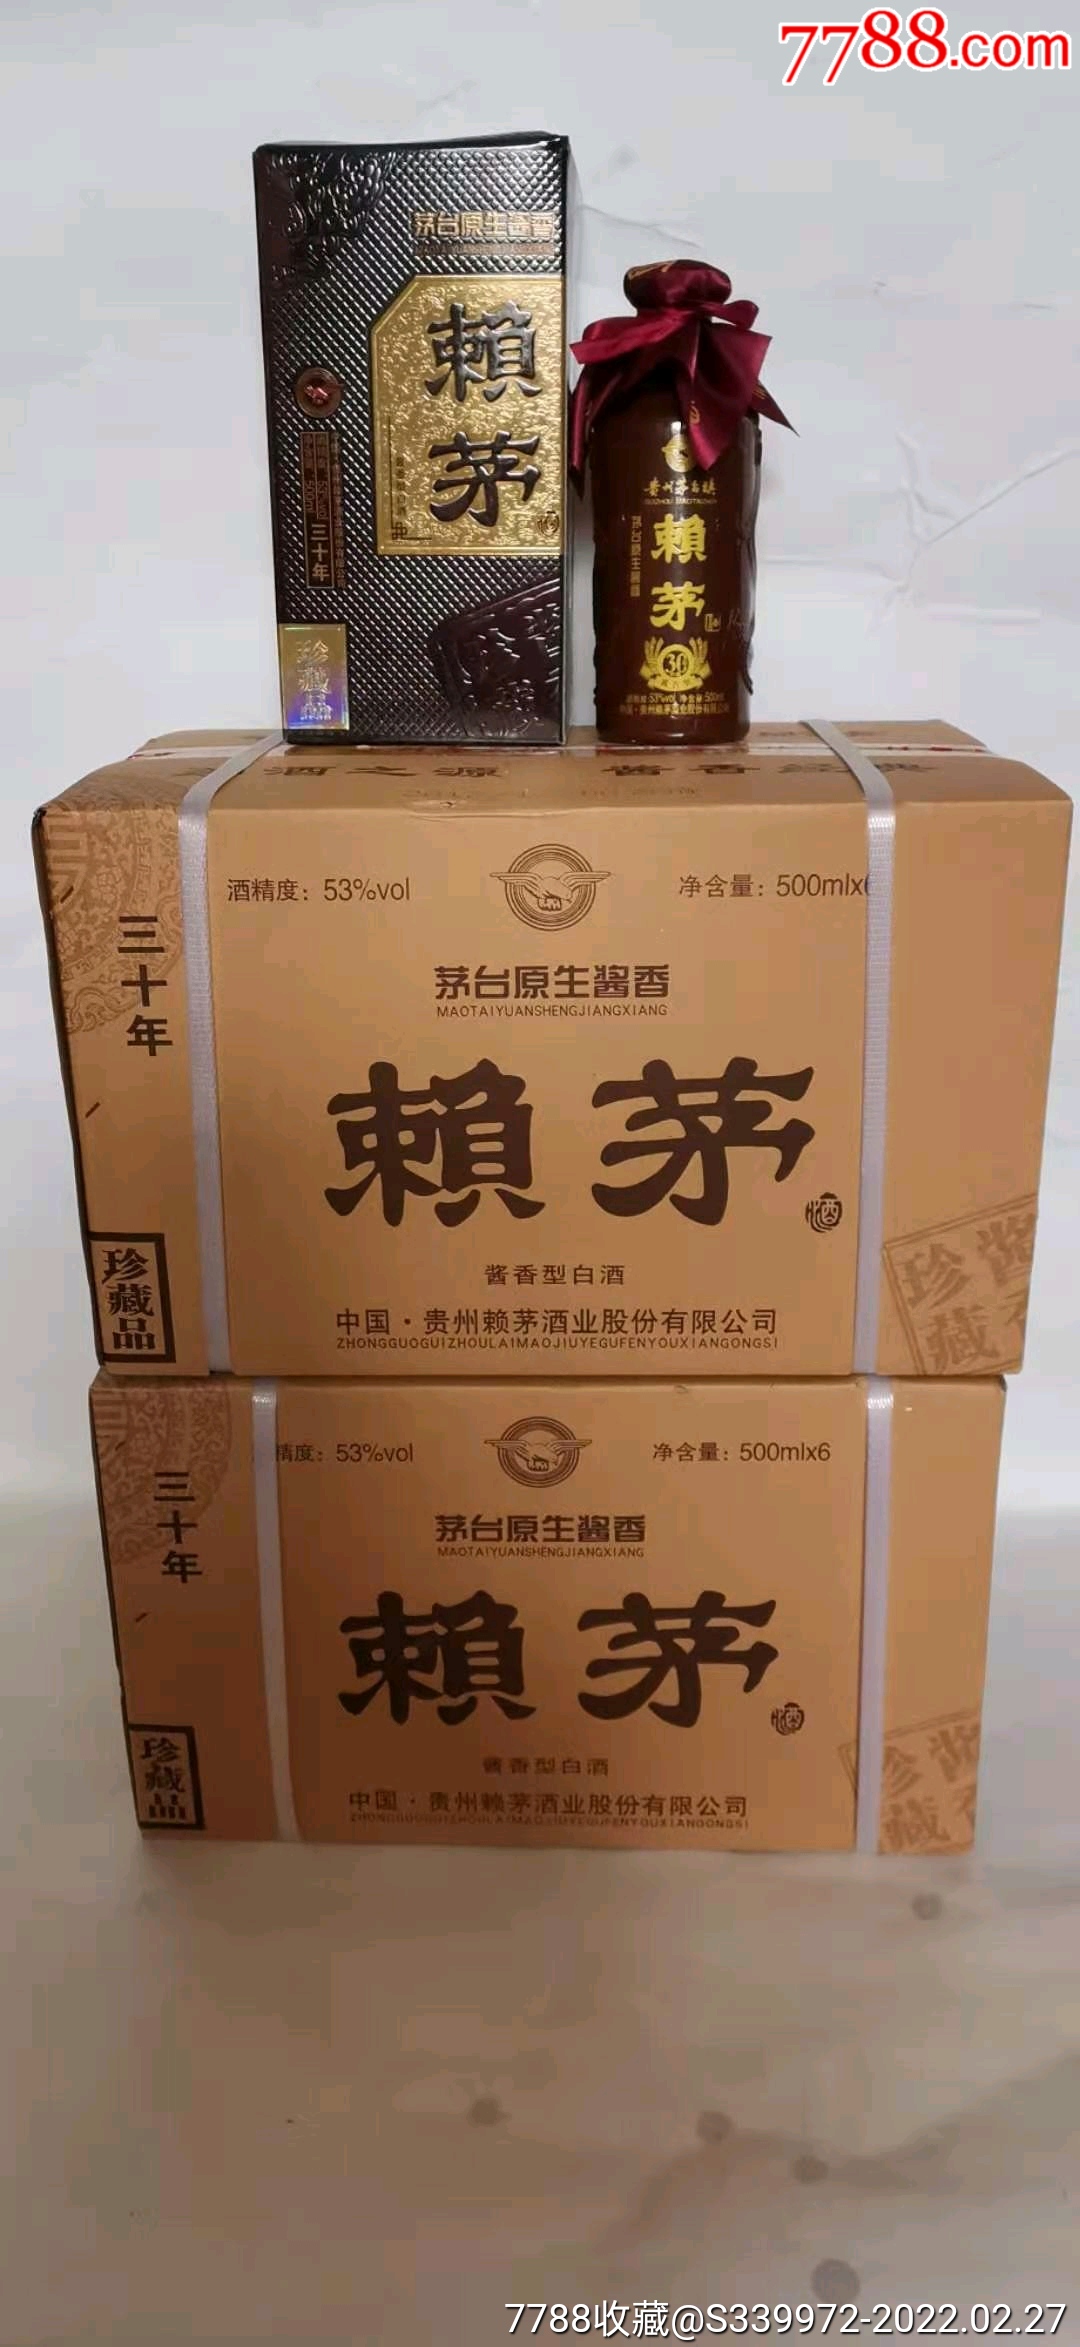 2箱丶三十年赖茅酒丶12瓶丶